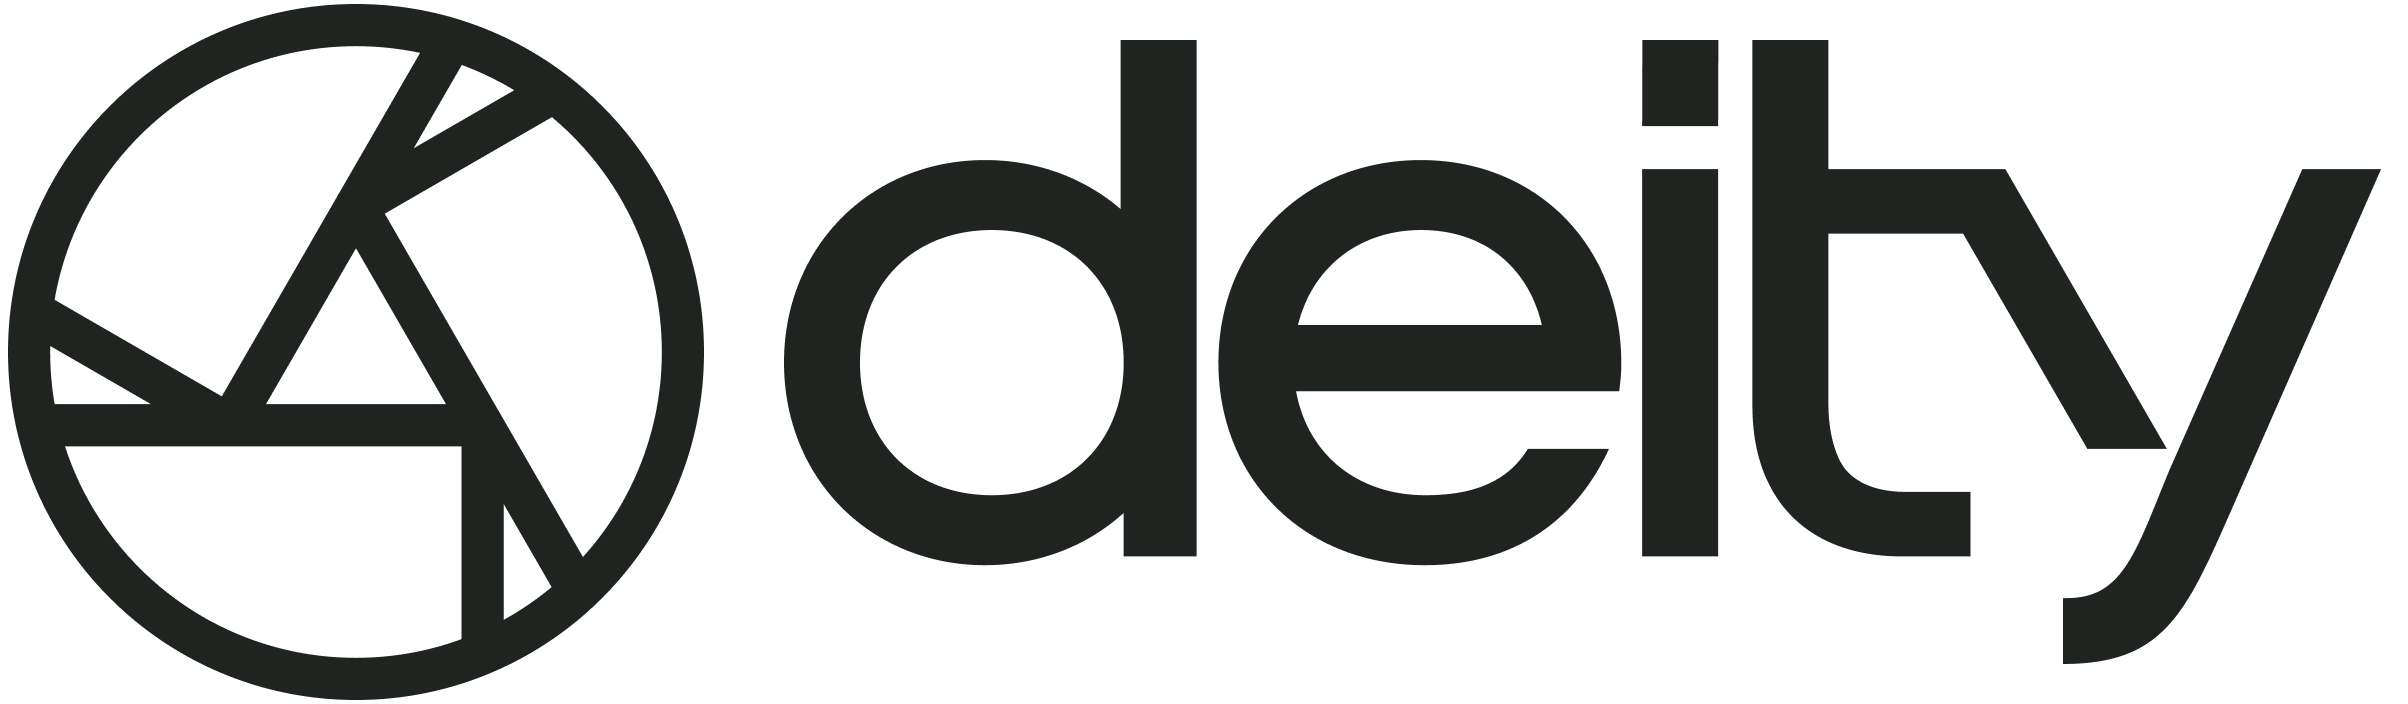 logo-landscape-lightmode